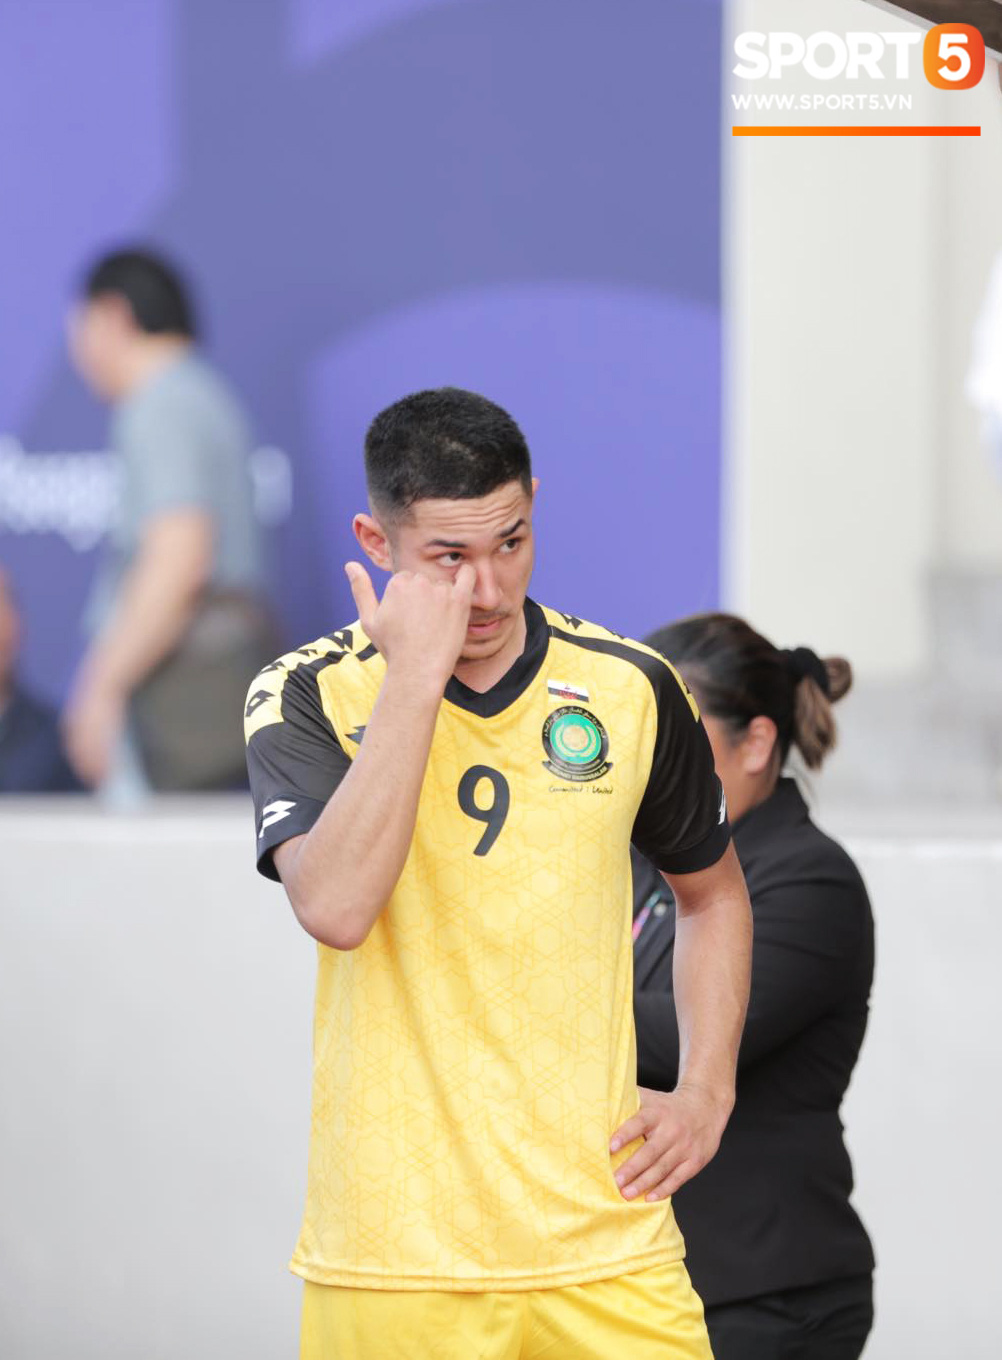 HLV Park Hang-seo bức xúc vì pha lật kèo của U22 Brunei: Cầu thủ giàu nhất thế giới không được đăng ký nhưng lại bất ngờ ra sân đá chính một cách đầy khó hiểu - Ảnh 3.